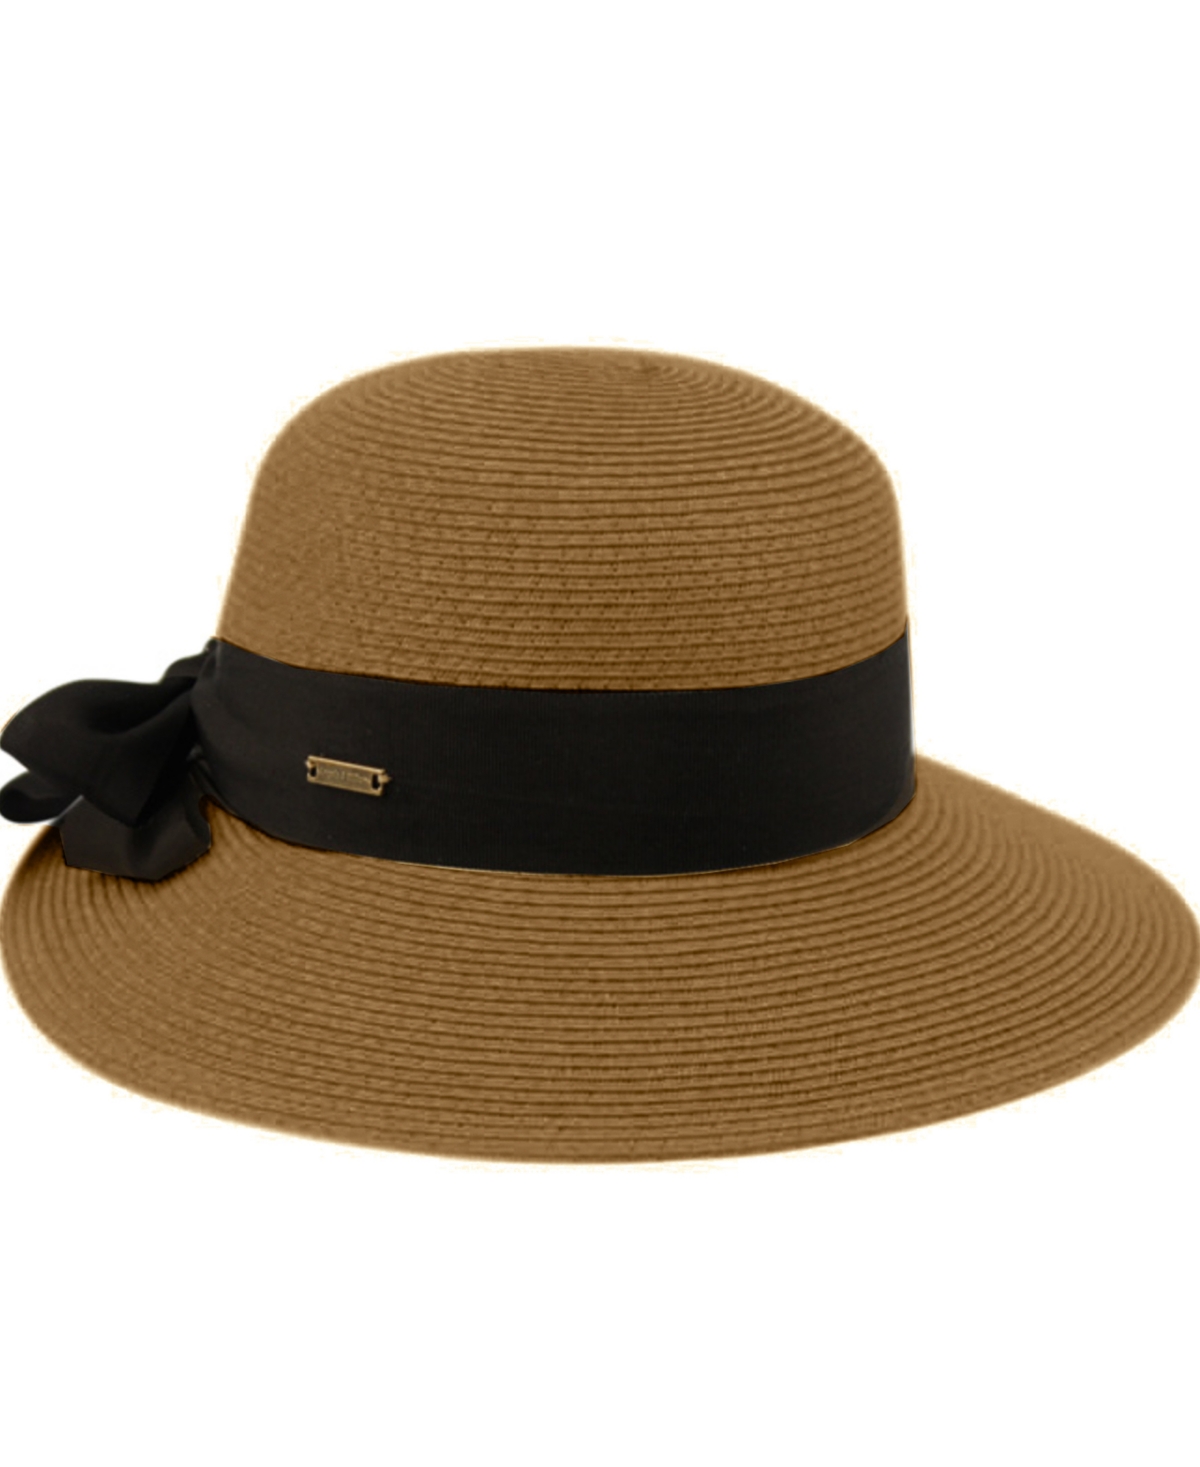 Women's Brimmed Beach Sun Straw Hat - Black